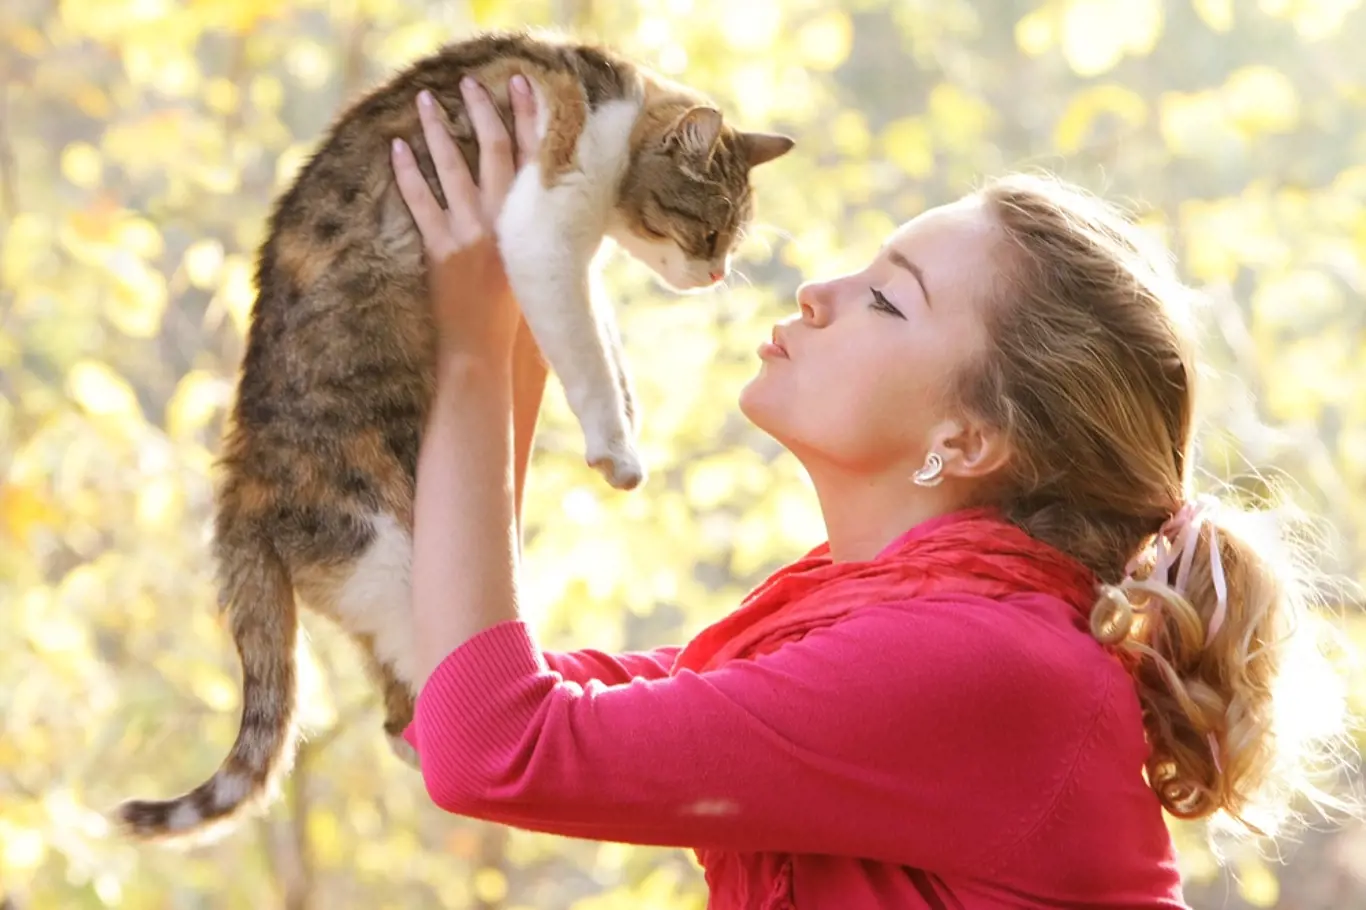 Máte raději kočky, nebo psy? Co zjistili odborníci během výzkumu?